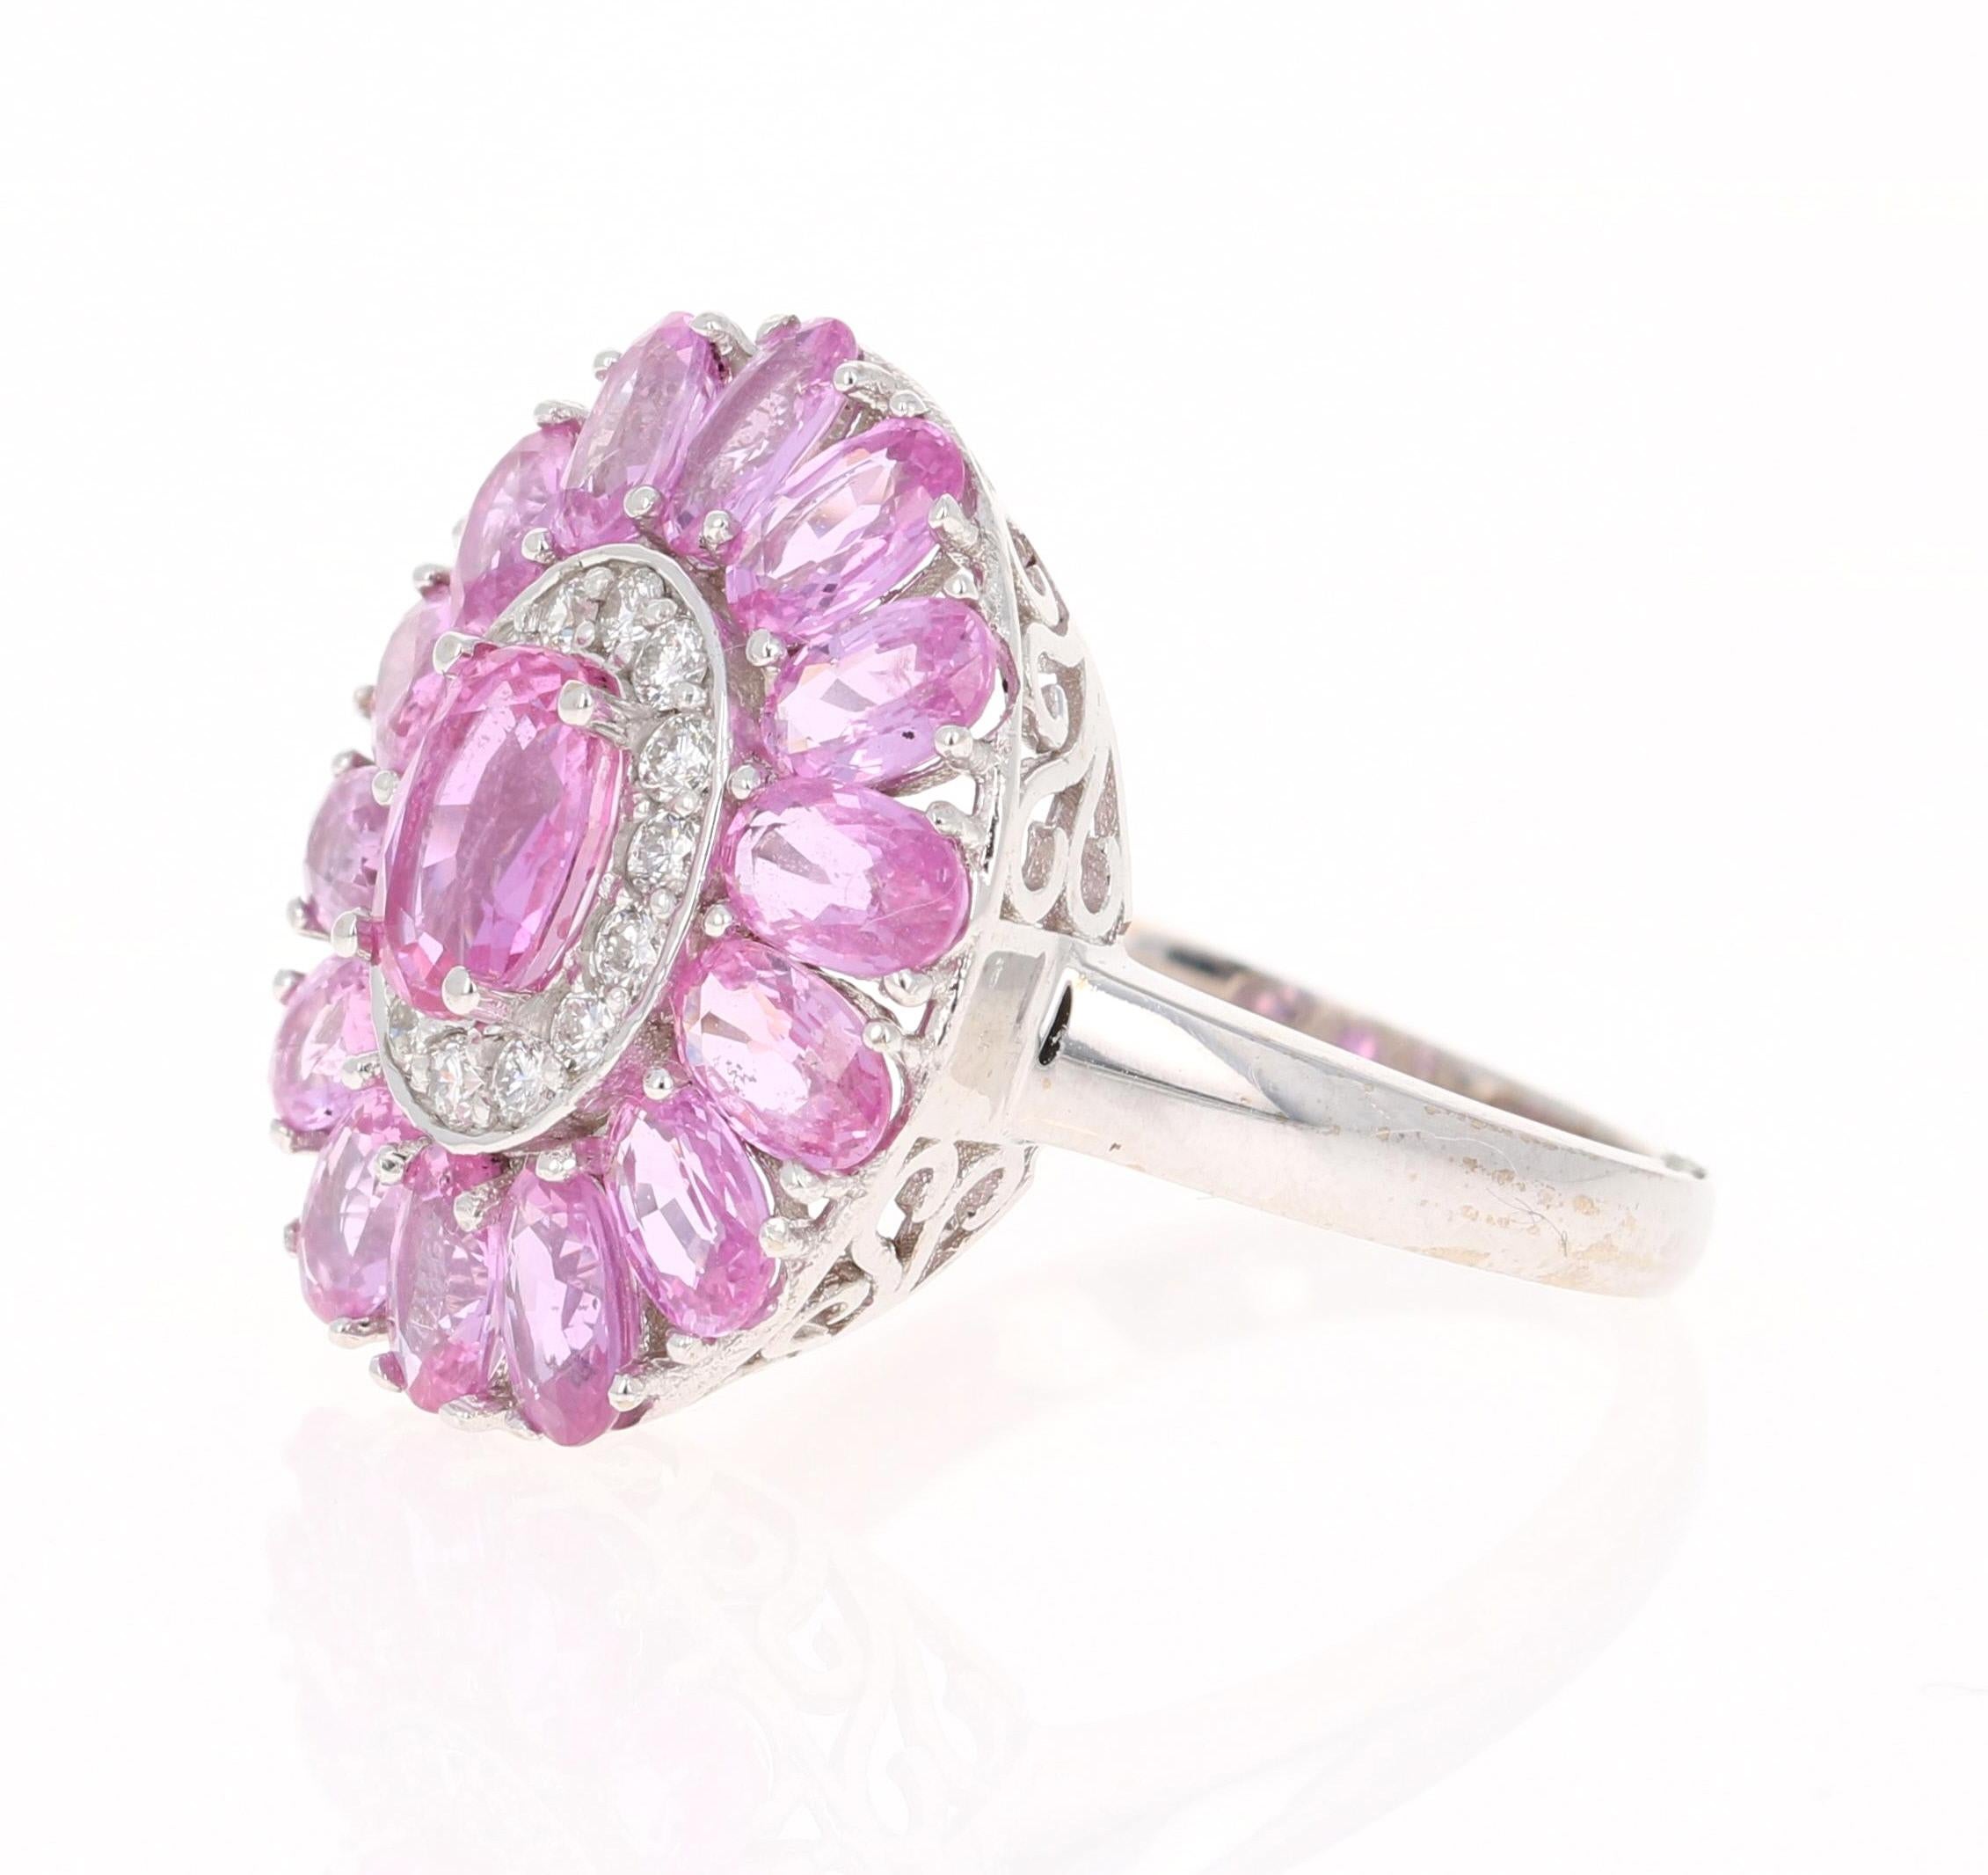 Modern 5.32 Carat Pink Sapphire Diamond 18 Karat White Gold Cocktail Ring GIA Certified